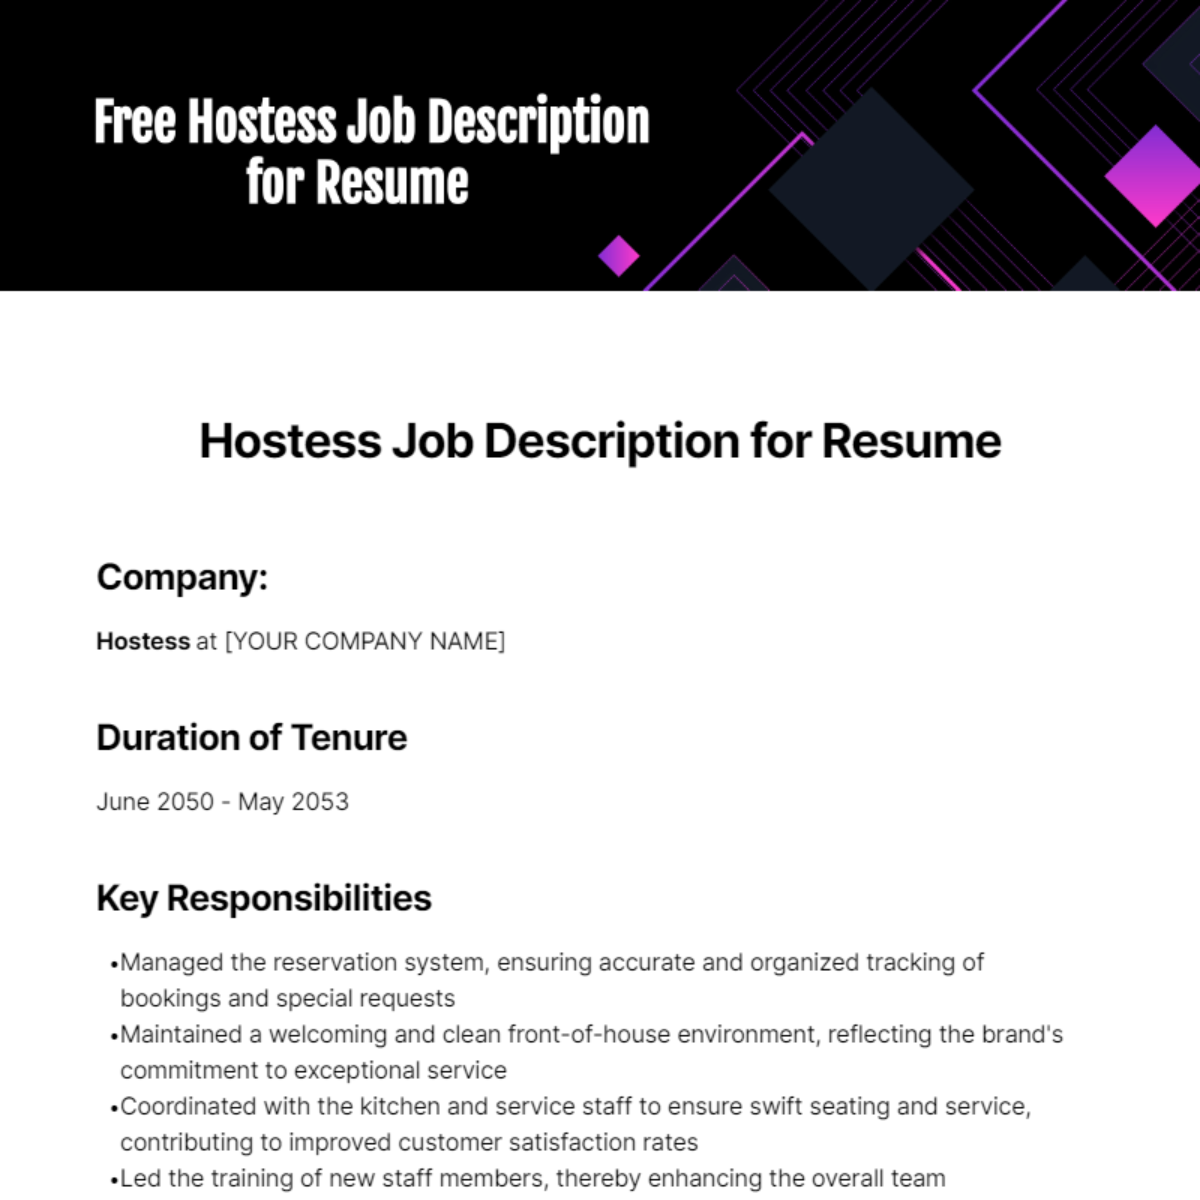 Free Hostess Job Description for Resume Template